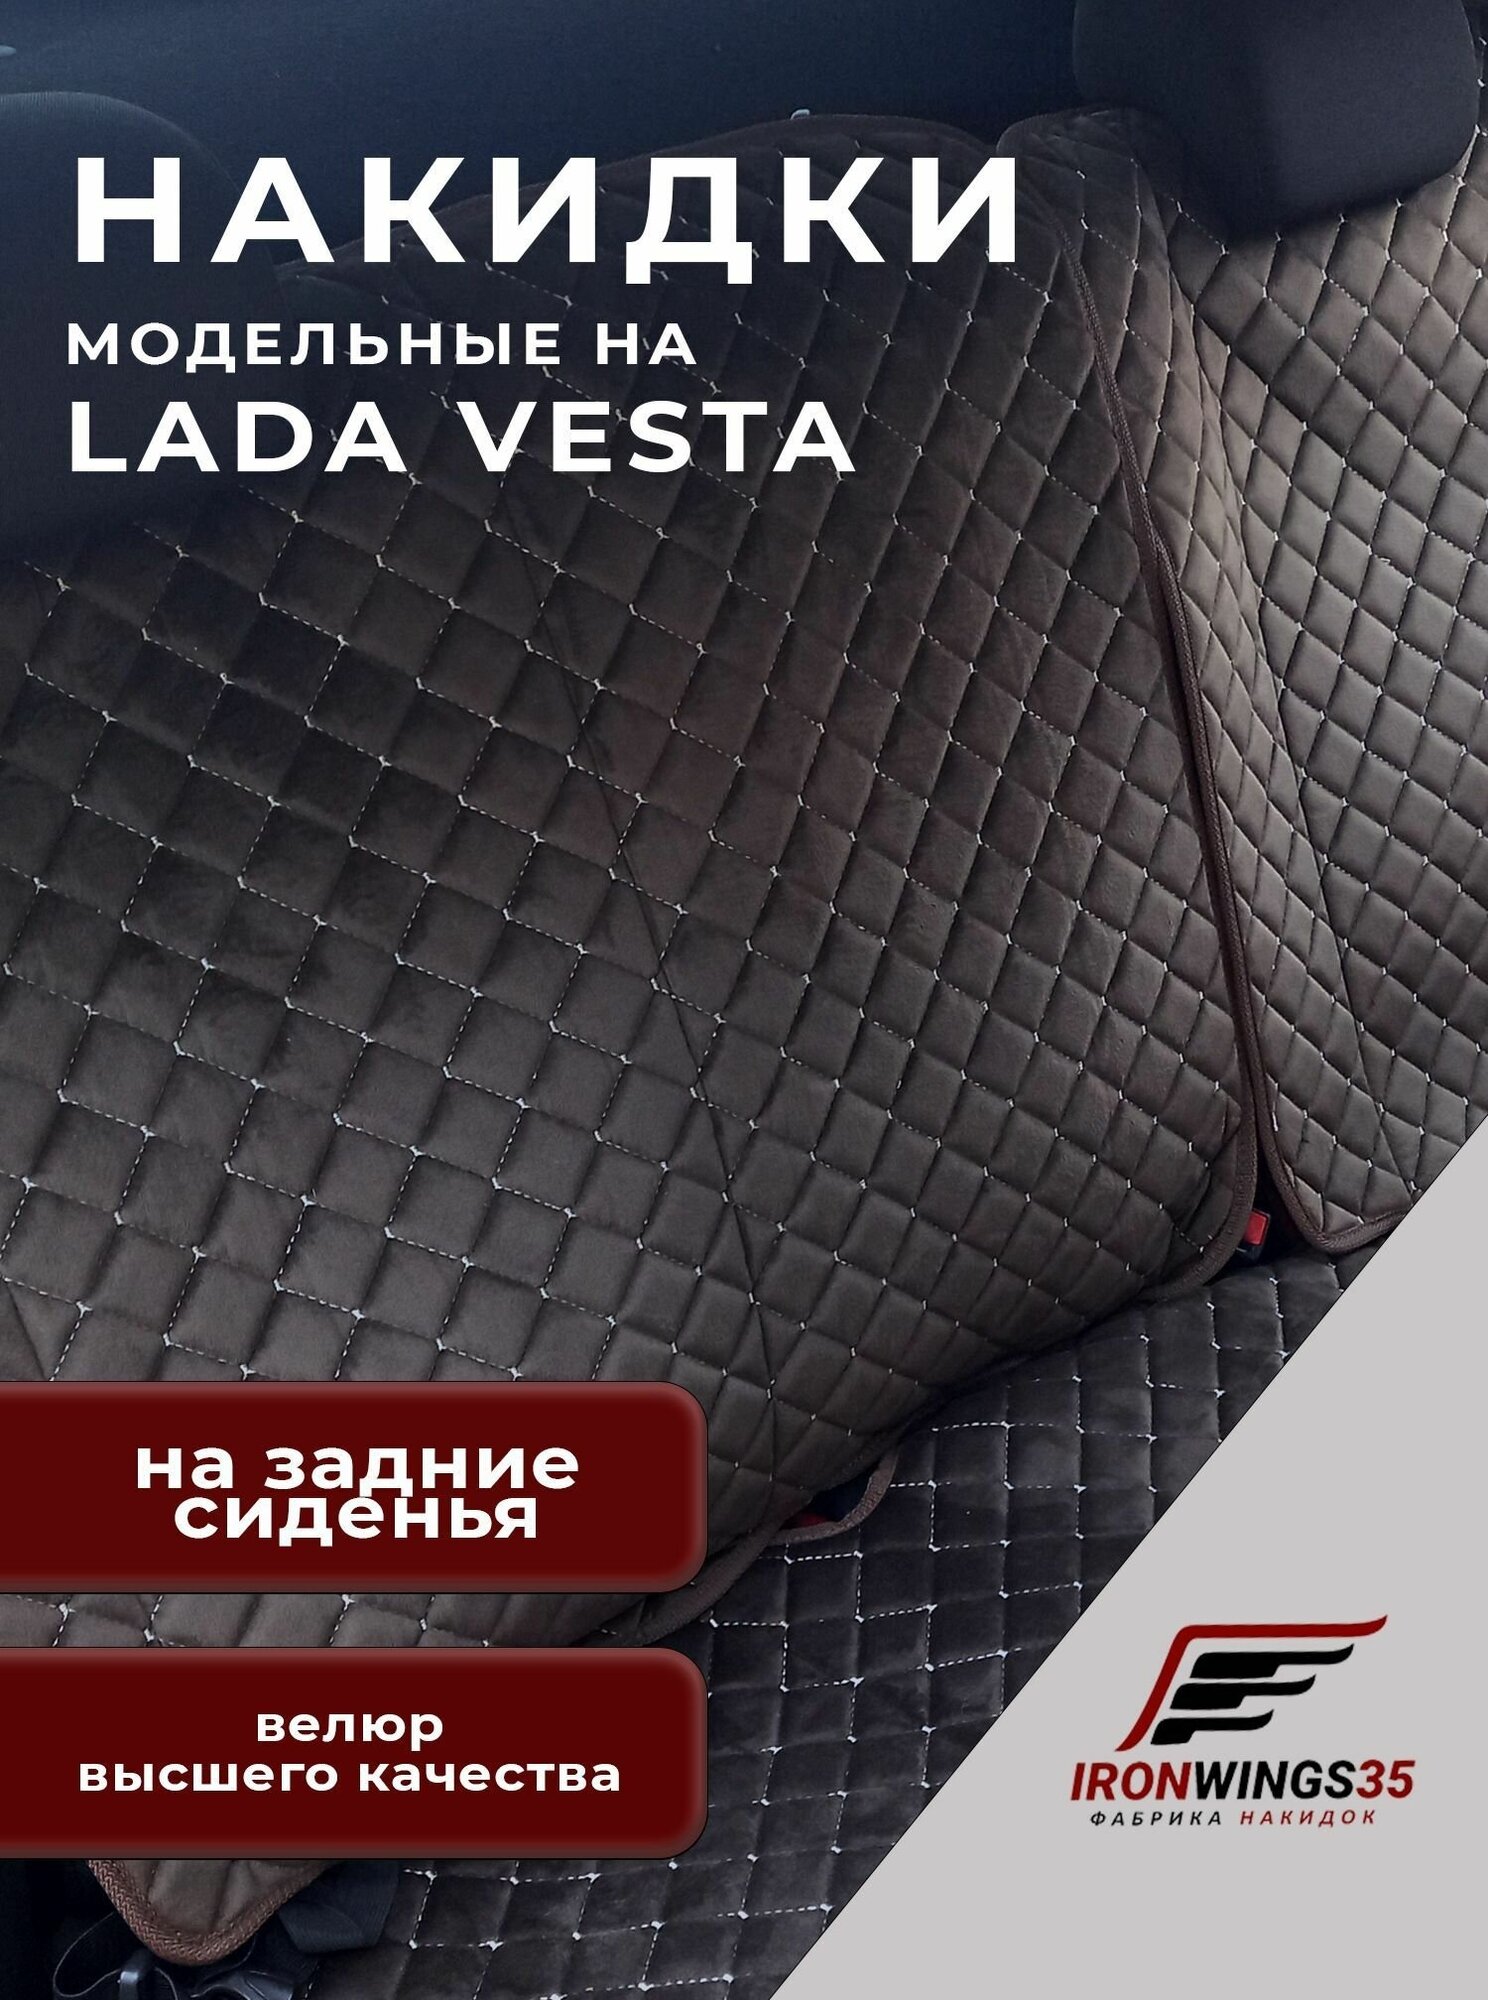 Накидки на задние сиденья автомобиля LADA VESTA из велюра в ромбик